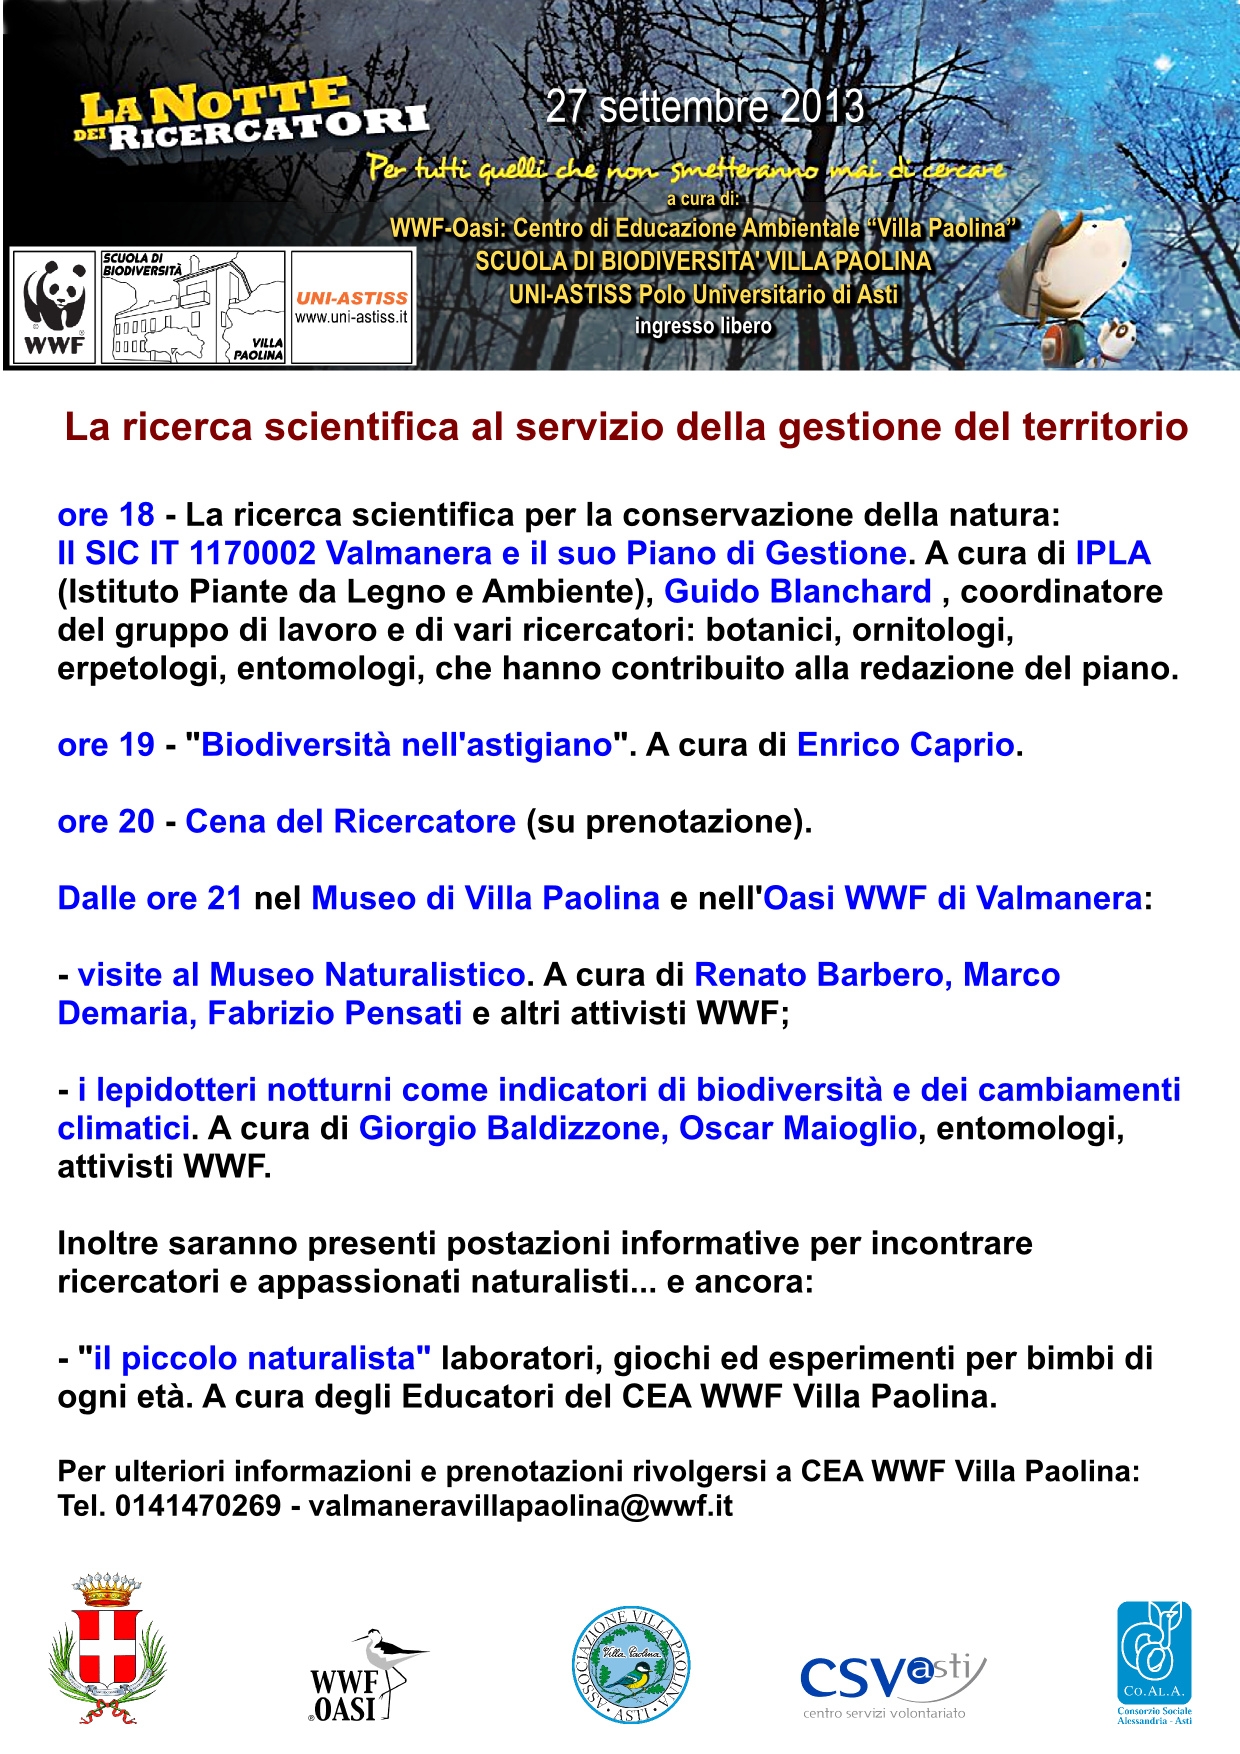 La notte dei ricercatori (Asti 27 settembre 2013) presso  l'Oasi WWF del Centro di Educazione Ambientale Villa Paolina.